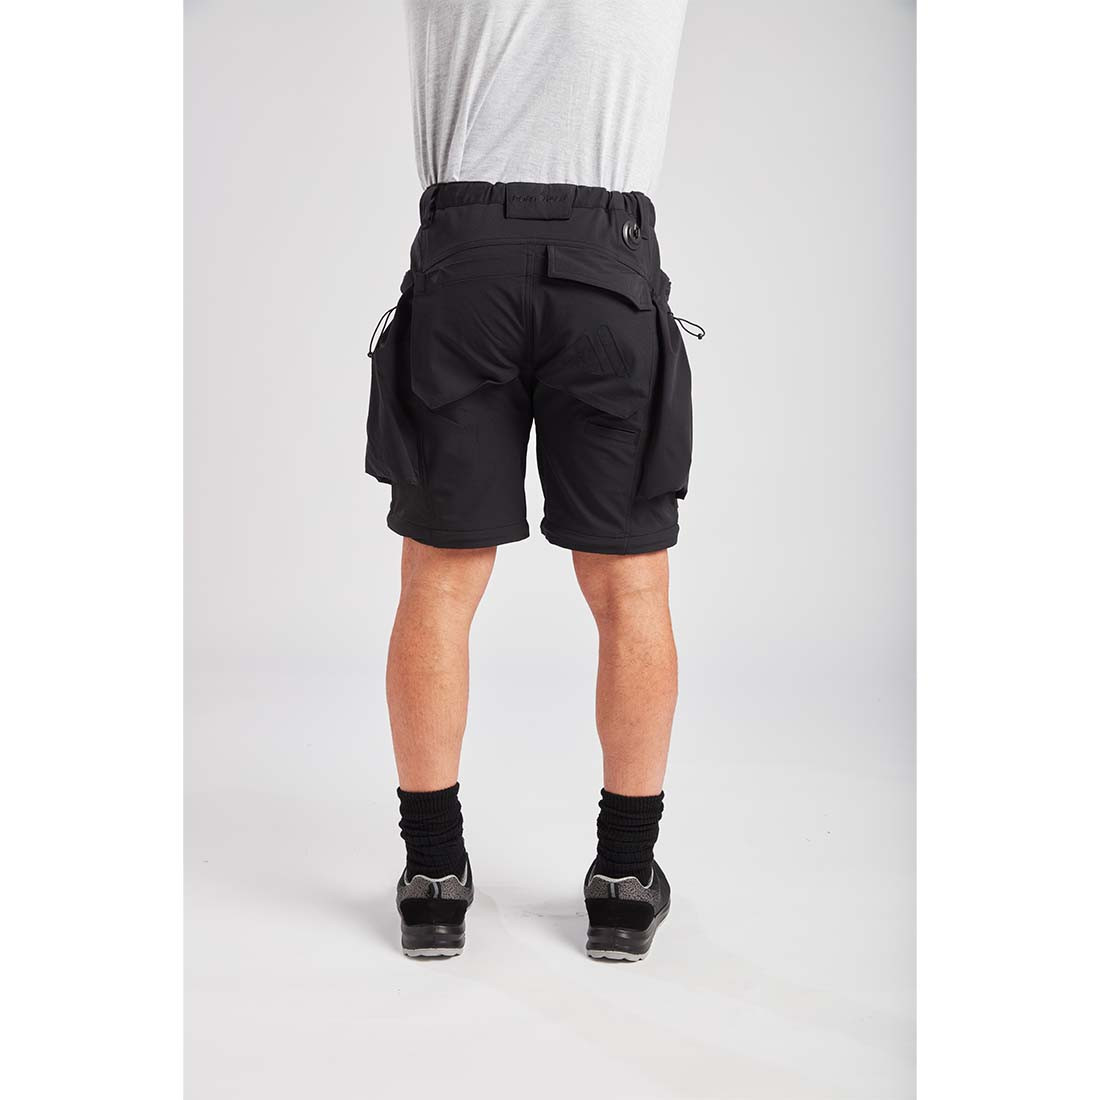 Pantalon Modular 3 în 1 Ultimate - Imbracaminte de protectie